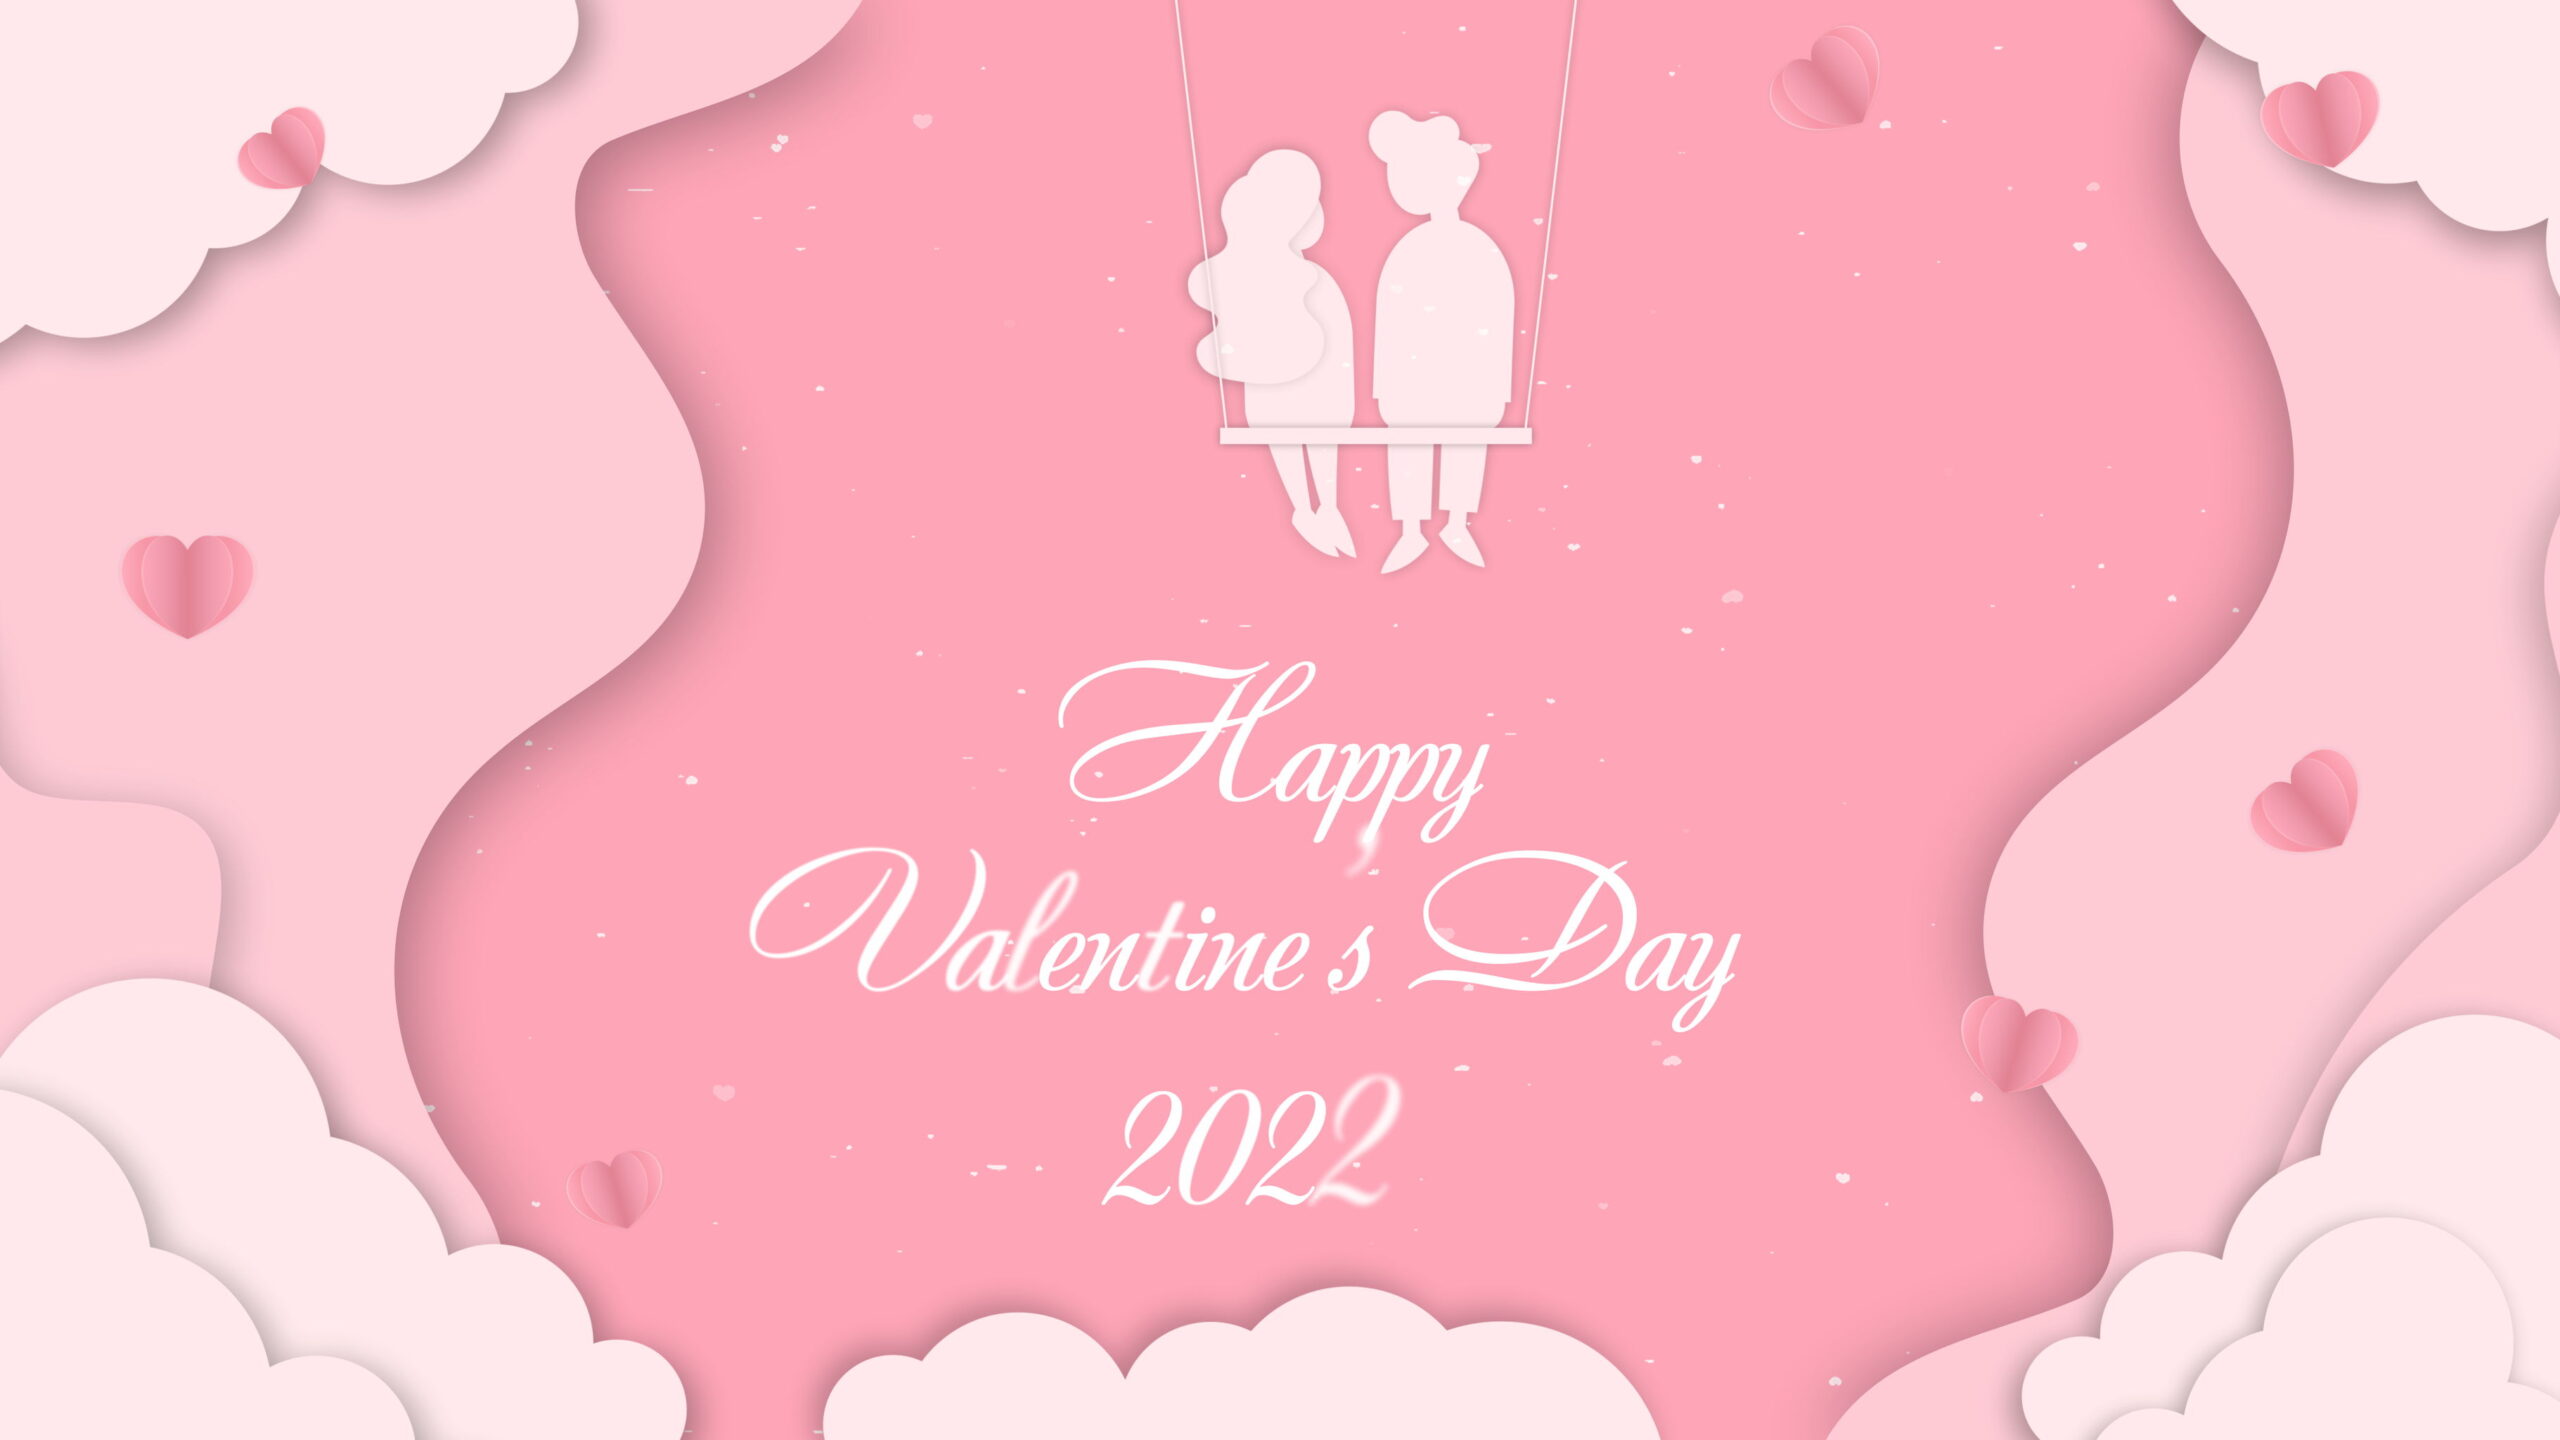 valentine's day video wishes